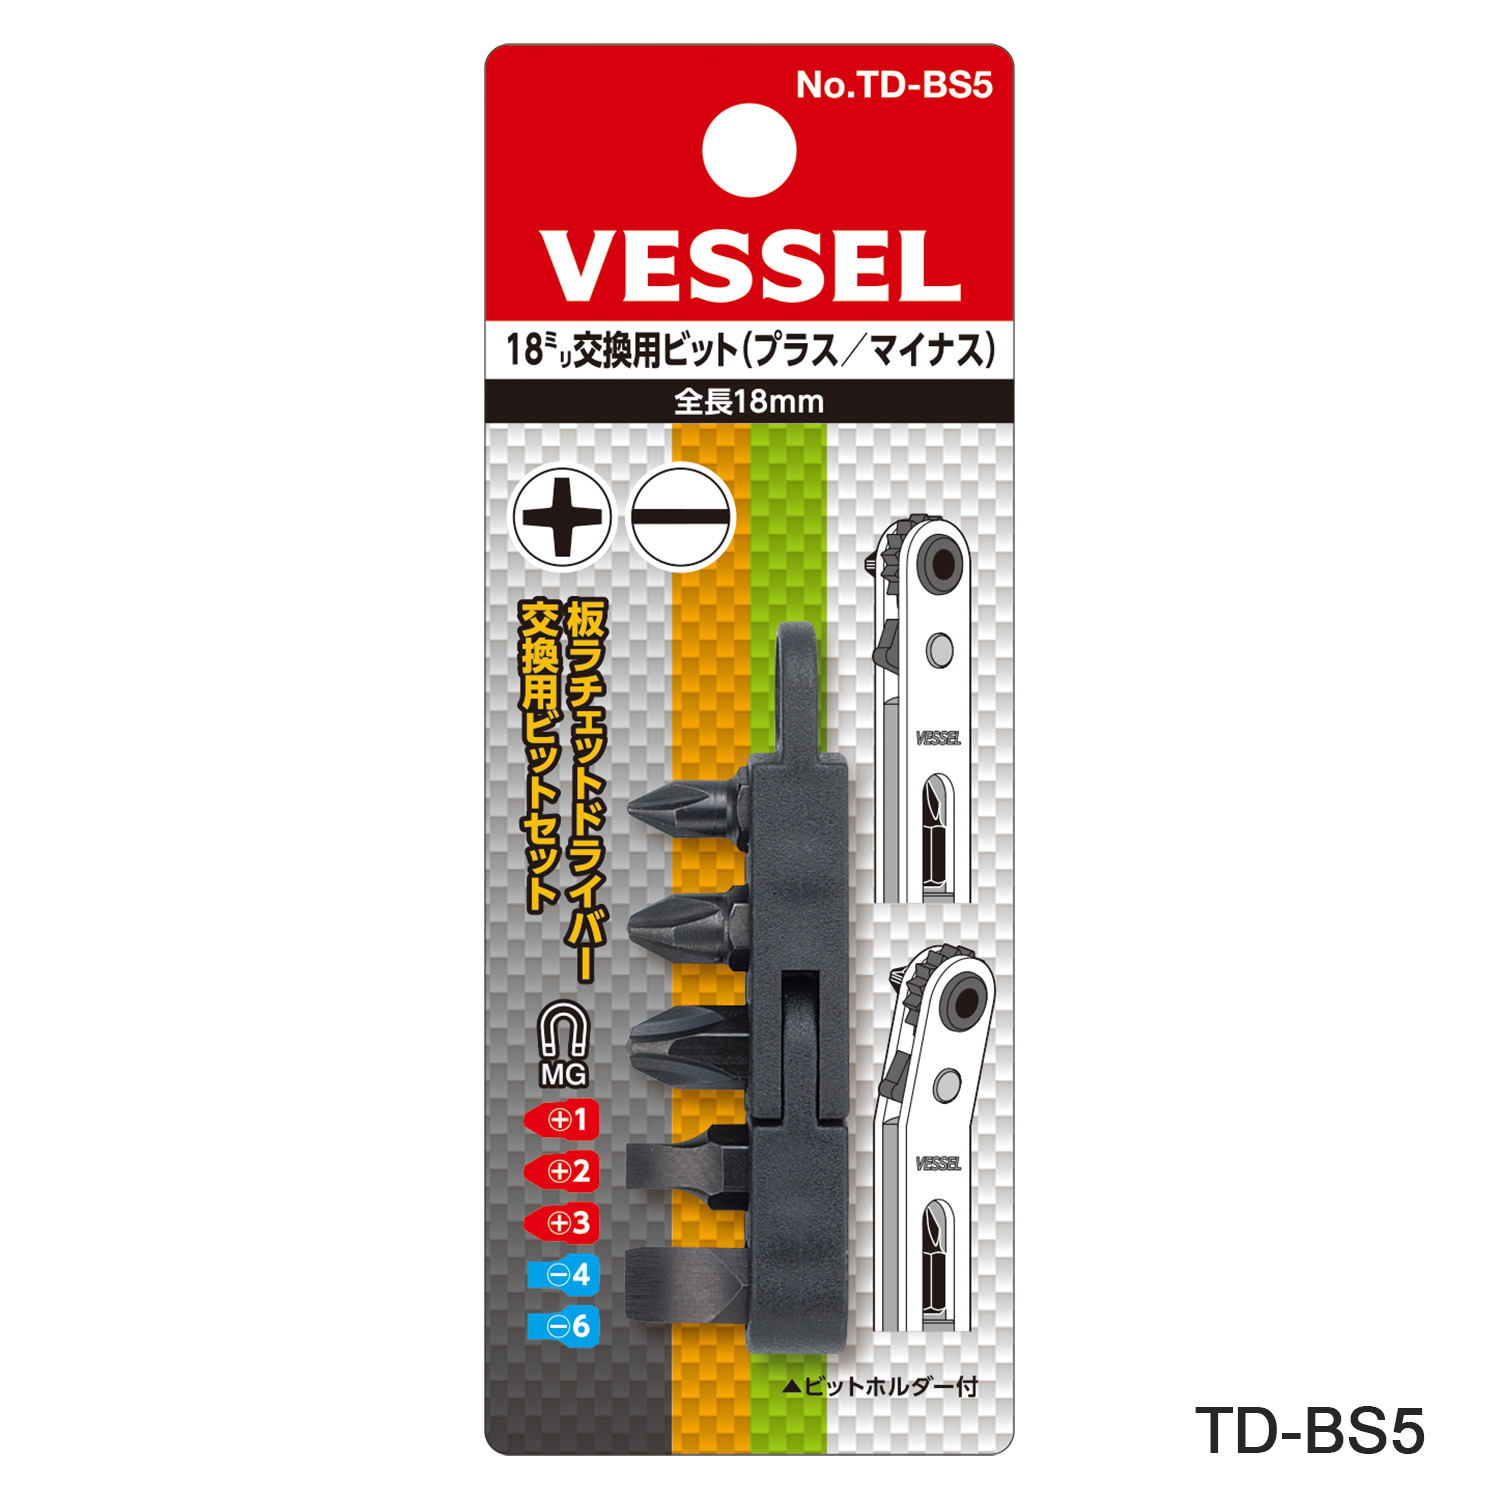 Bộ đầu vít thay thế TD-BS5/6 (5 đầu vít) - Vessel (Nhật Bản)